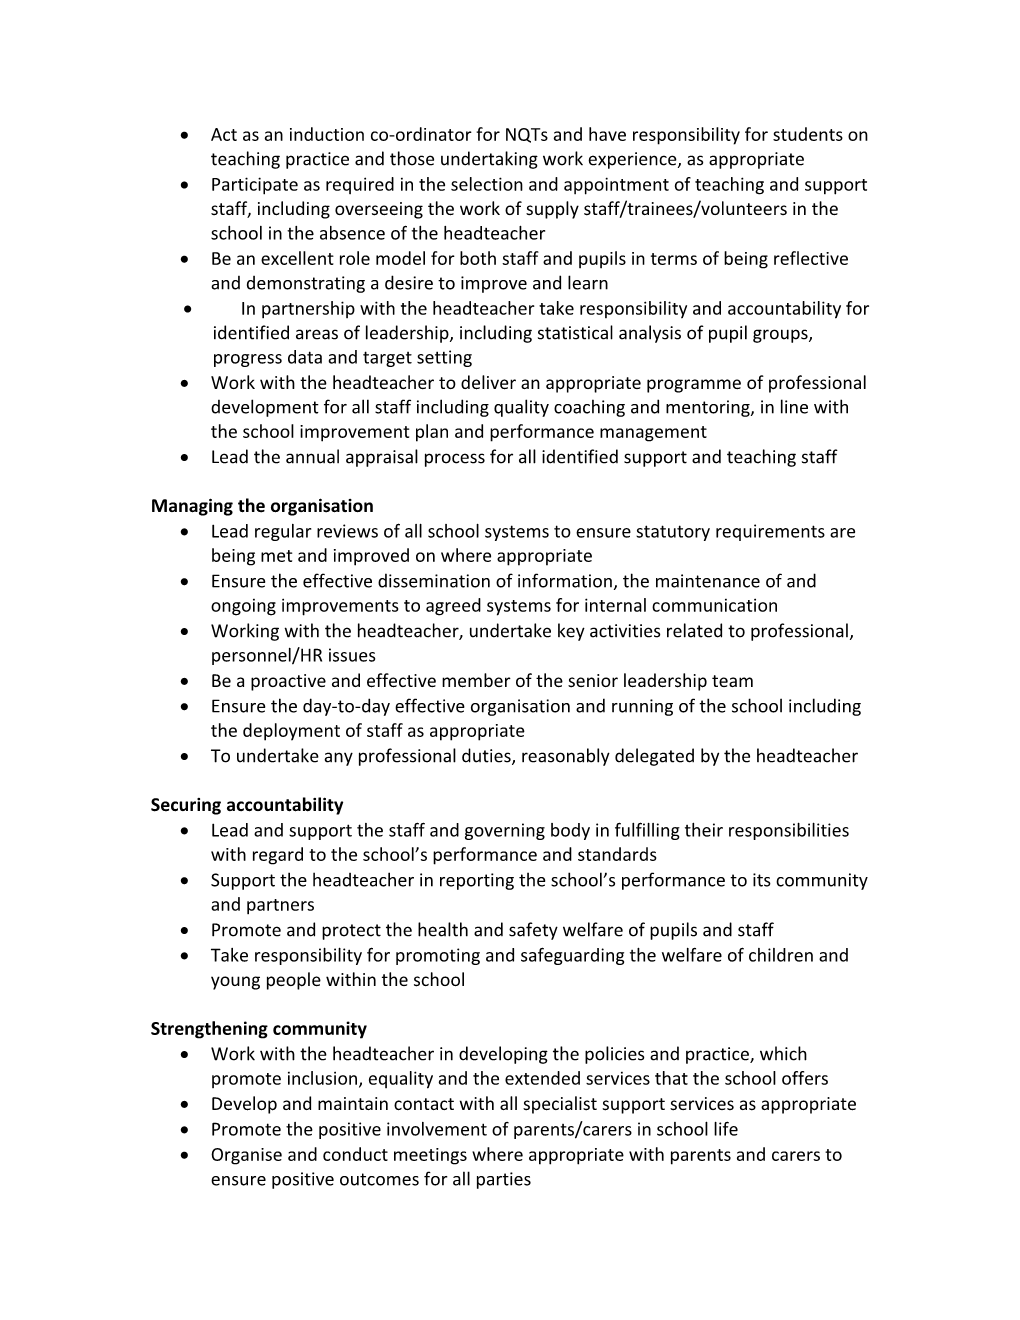 An Example Job Description for a Deputy Headteacher/ Assistant Headteacher